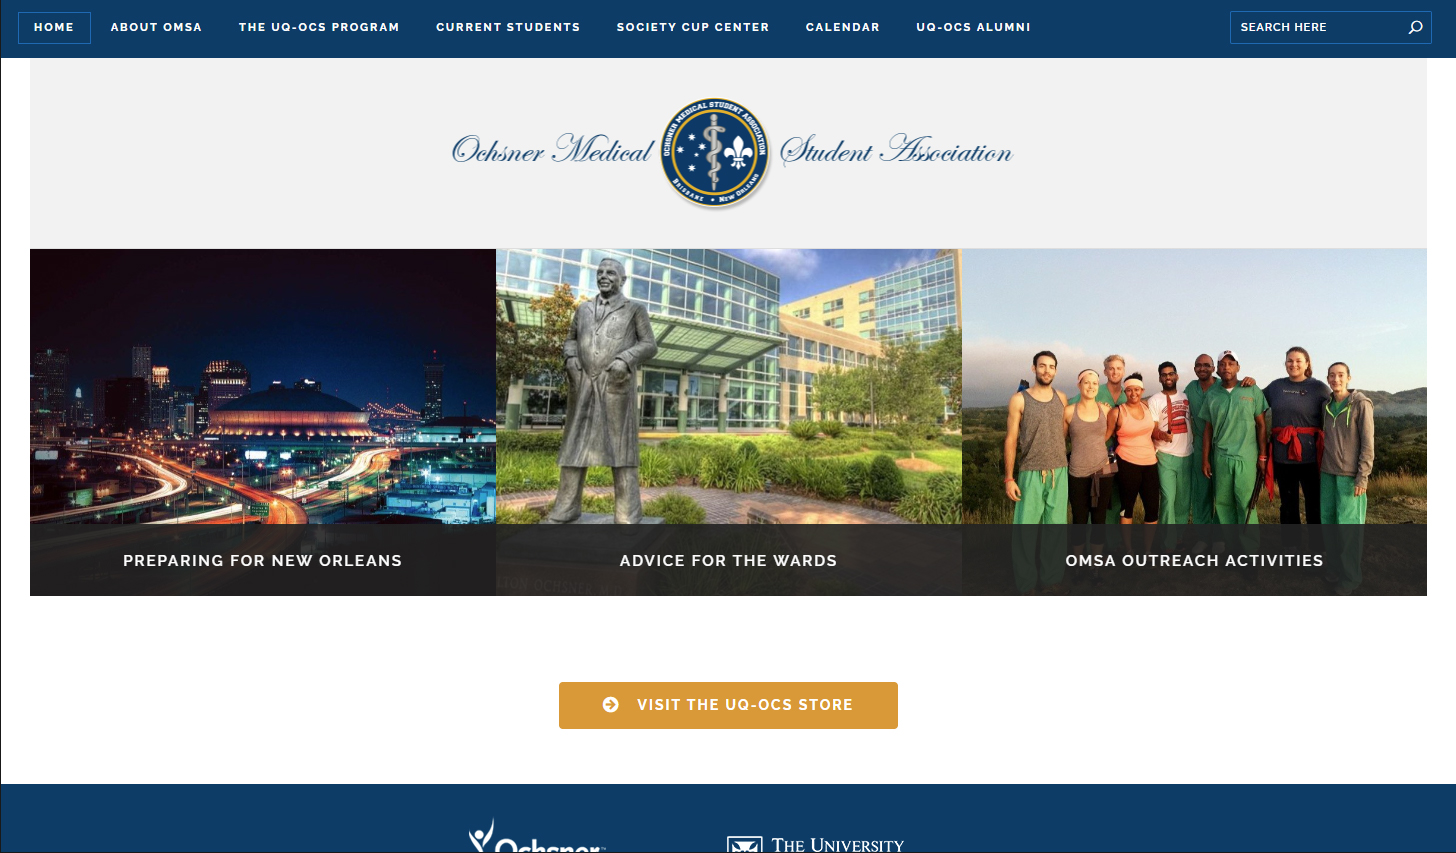 Ochsner Medical Student Association